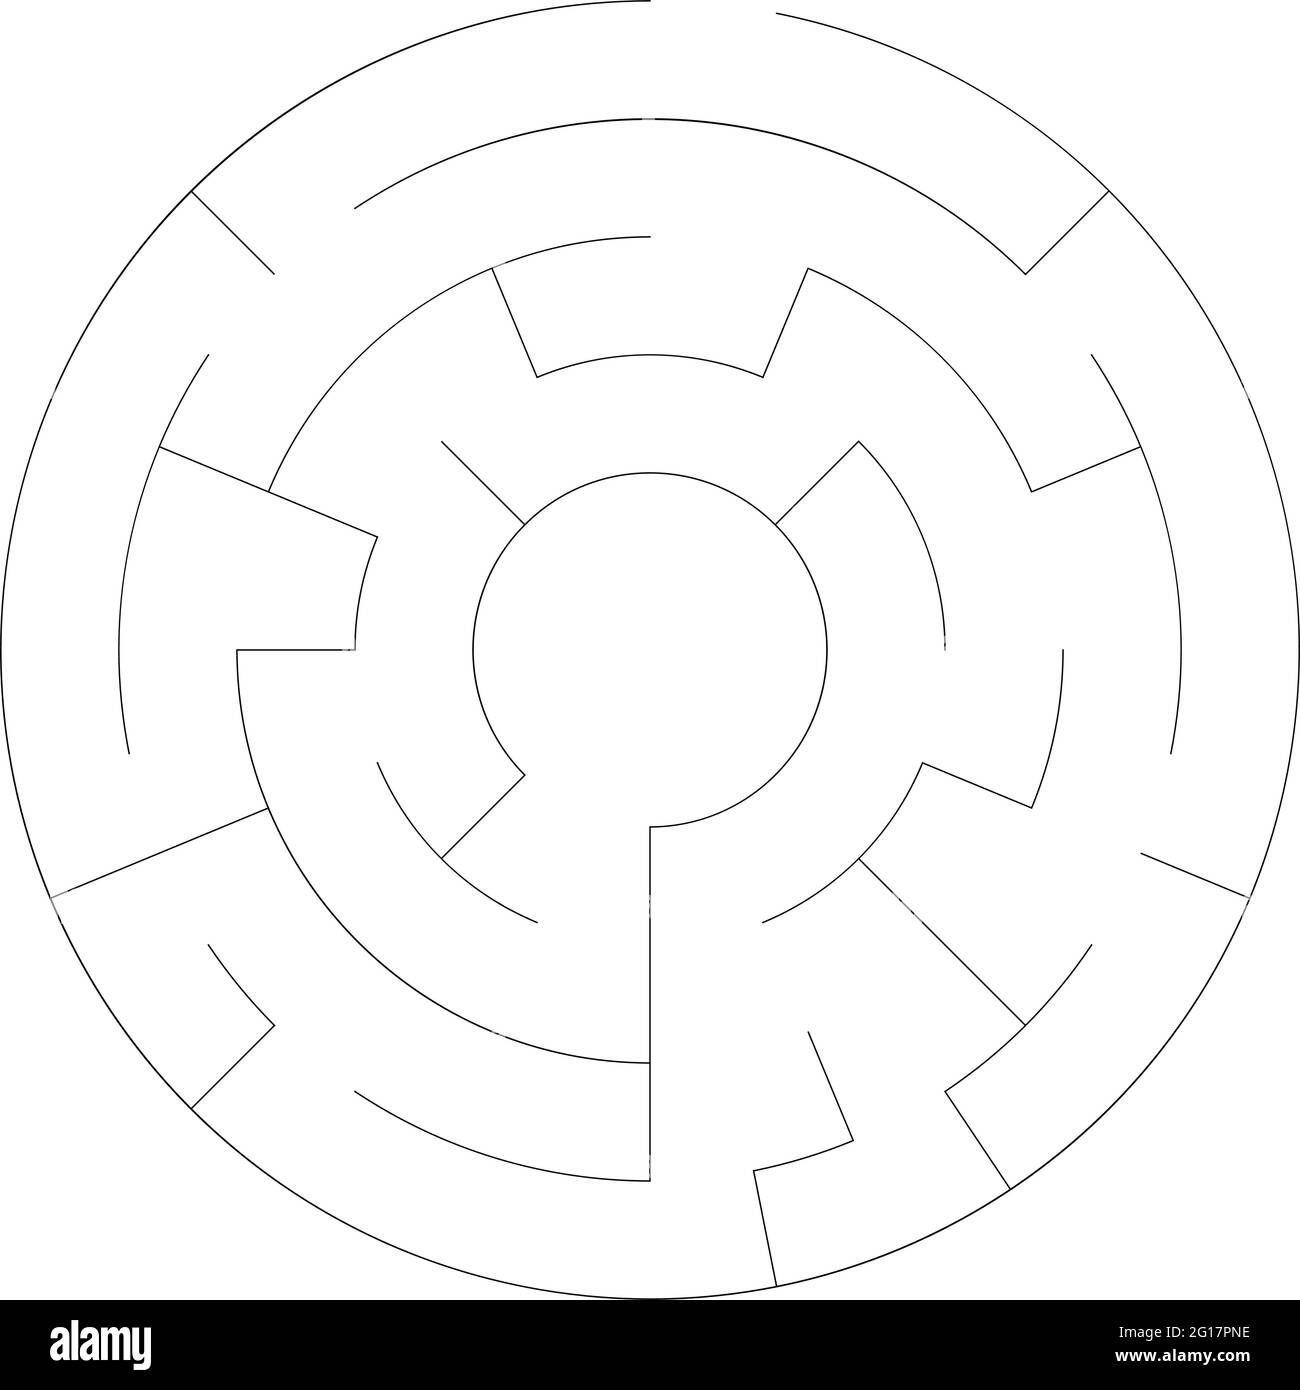 Lösbare Labyrinth Labyrinth-Vektor-Ilustration – Stock-Vektor-Illustration, Clip-Art-Grafiken Stock Vektor